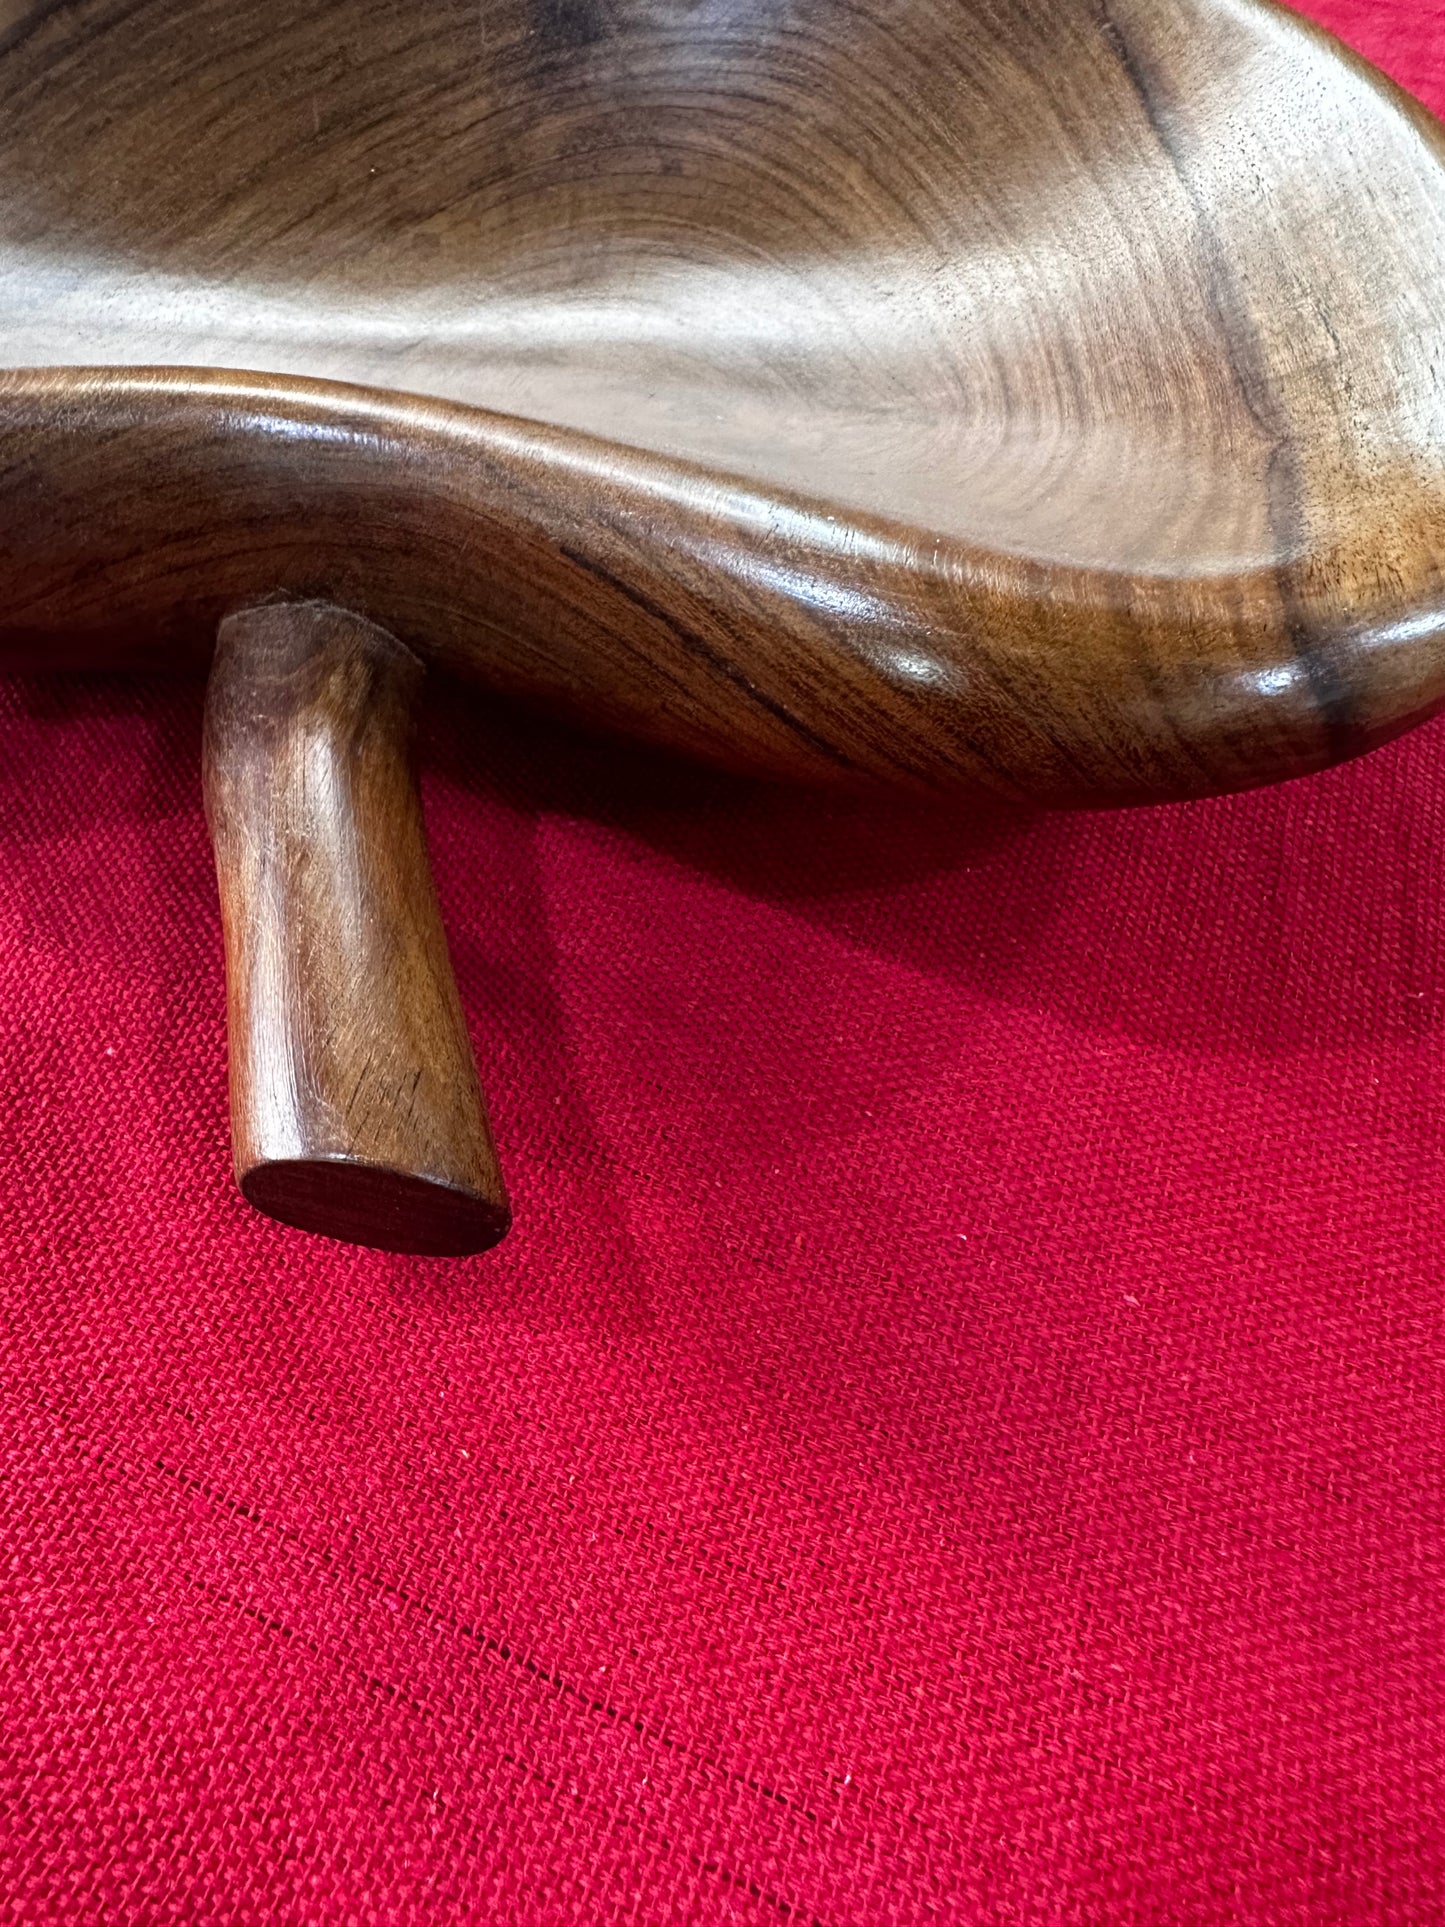 Fruteira de mesa ou gamela em madeira modelo maça 37 cm-PEÇA ÚNICA